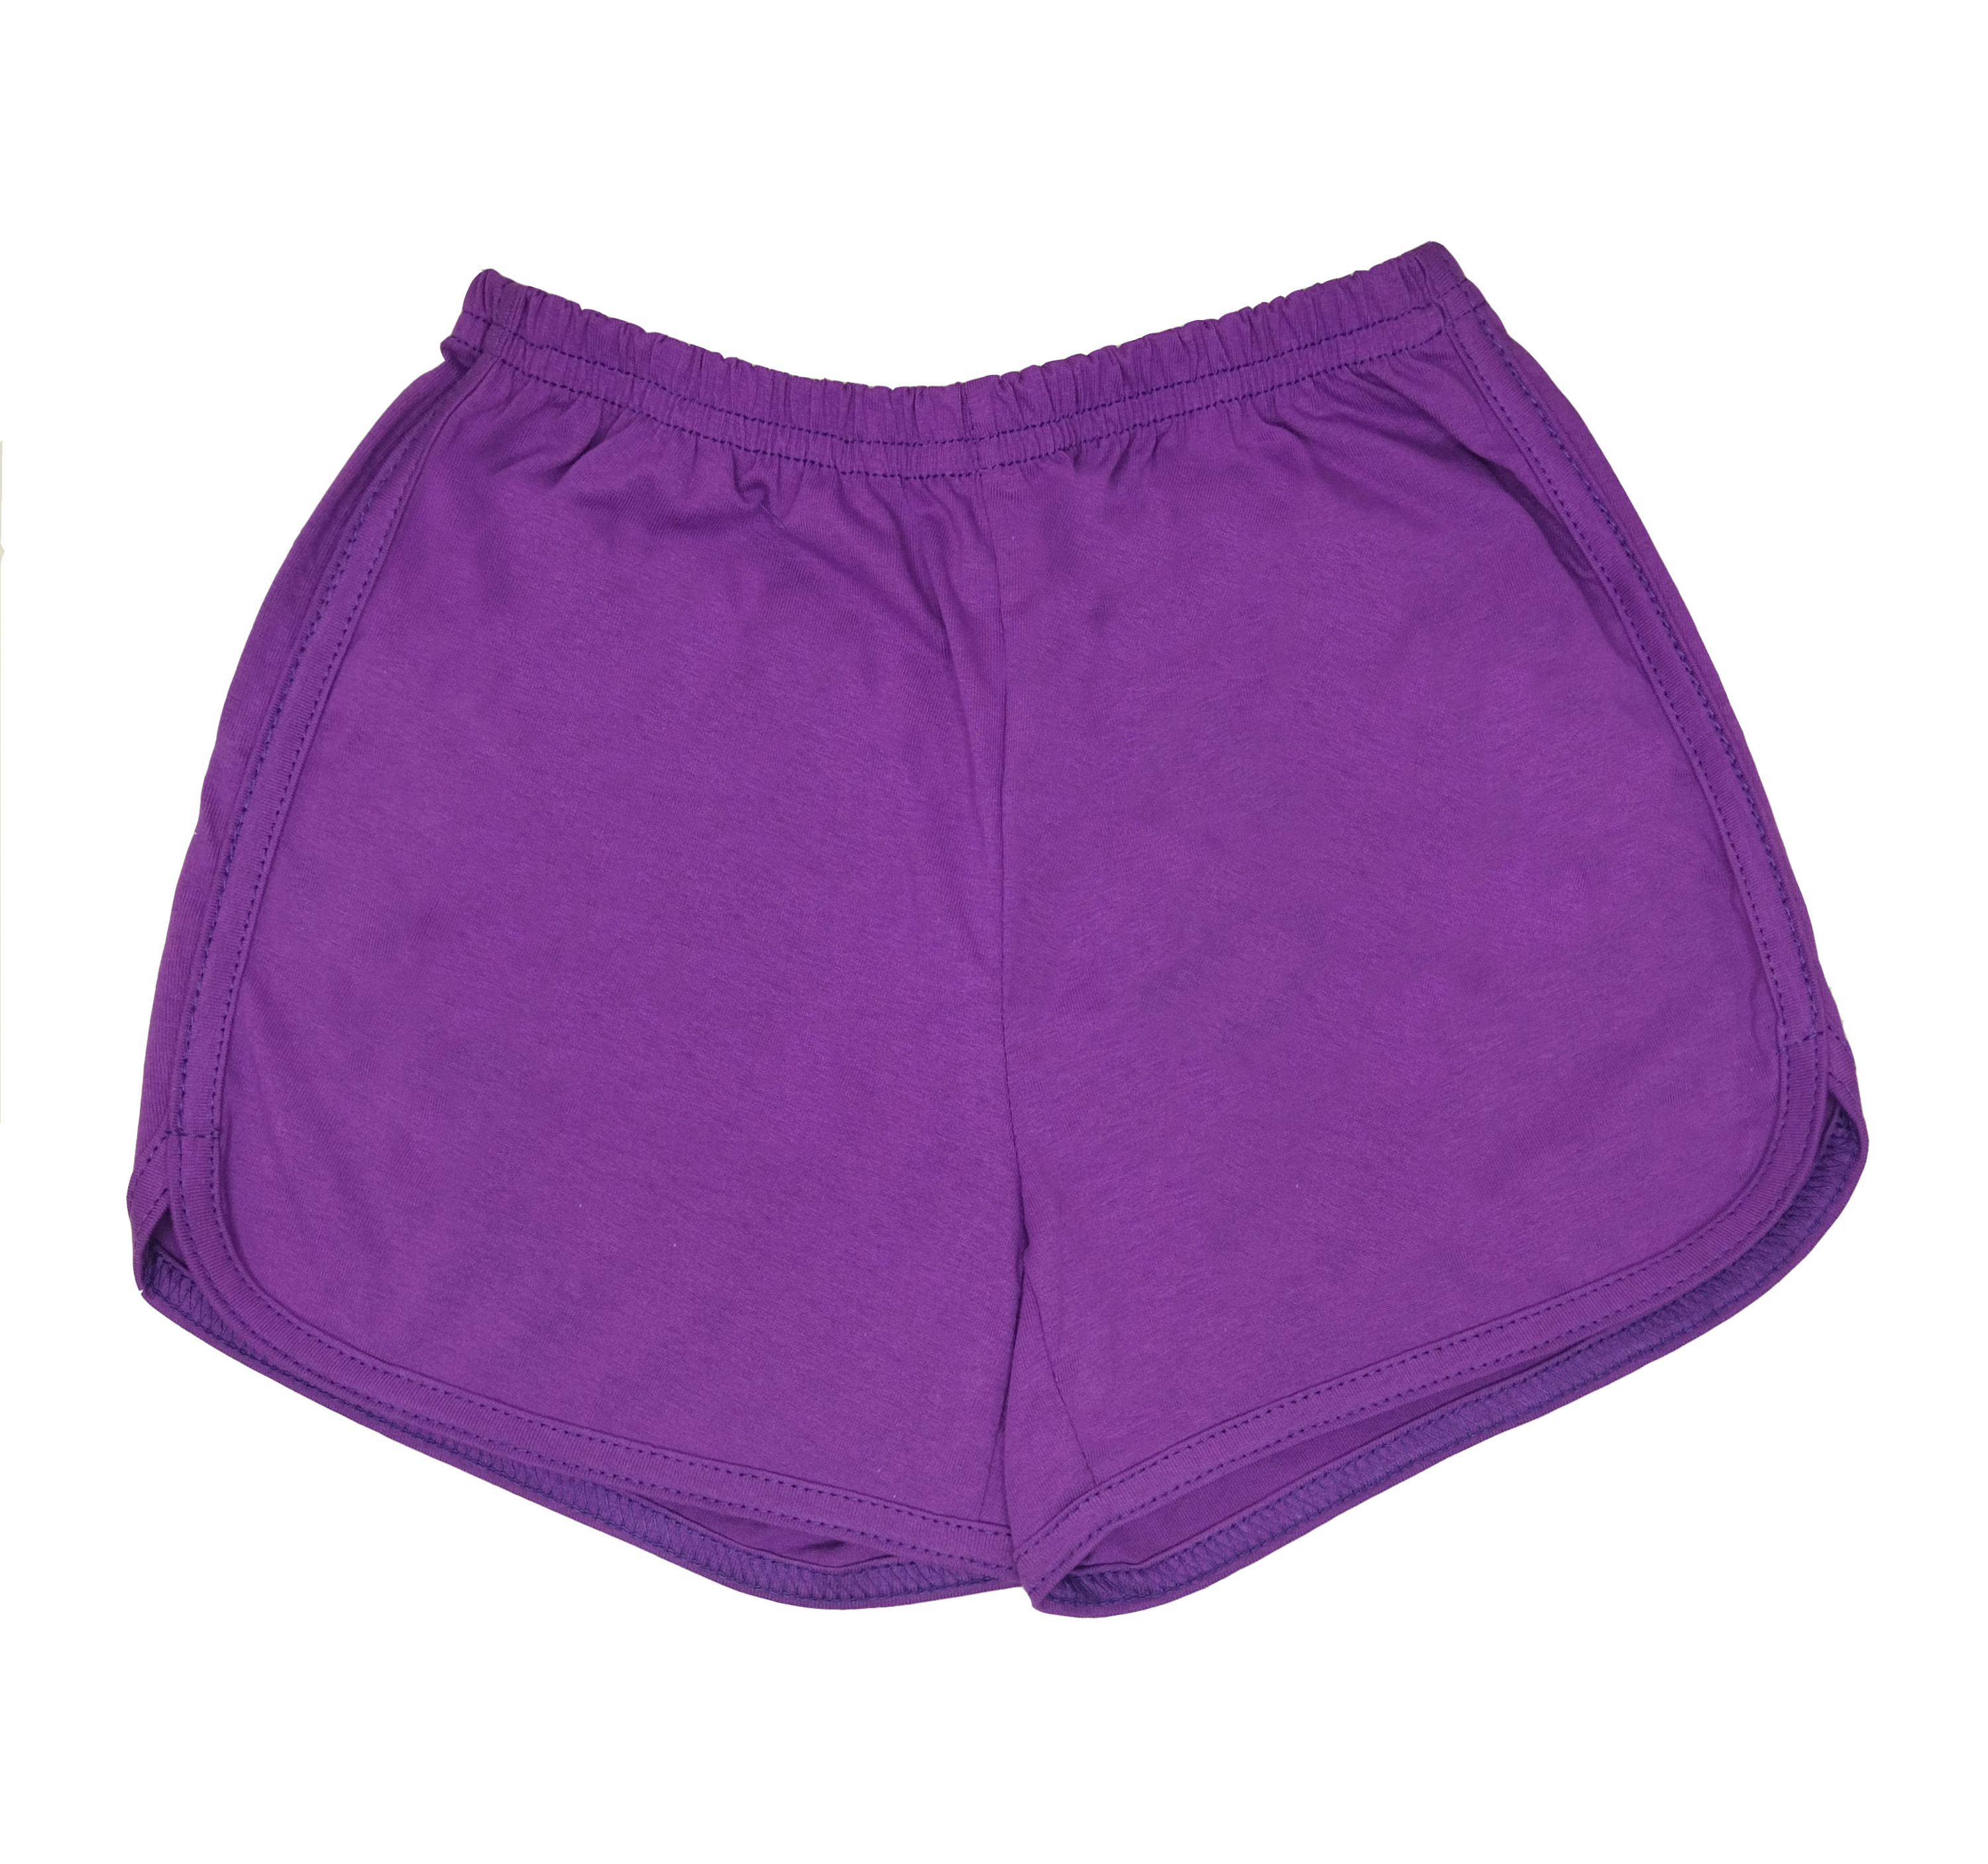 Шорты детские Детрик ШД-0322, фиолетовый, 116 сумка для йоги и гимнастики sangh 37х20х20 см фиолетовый